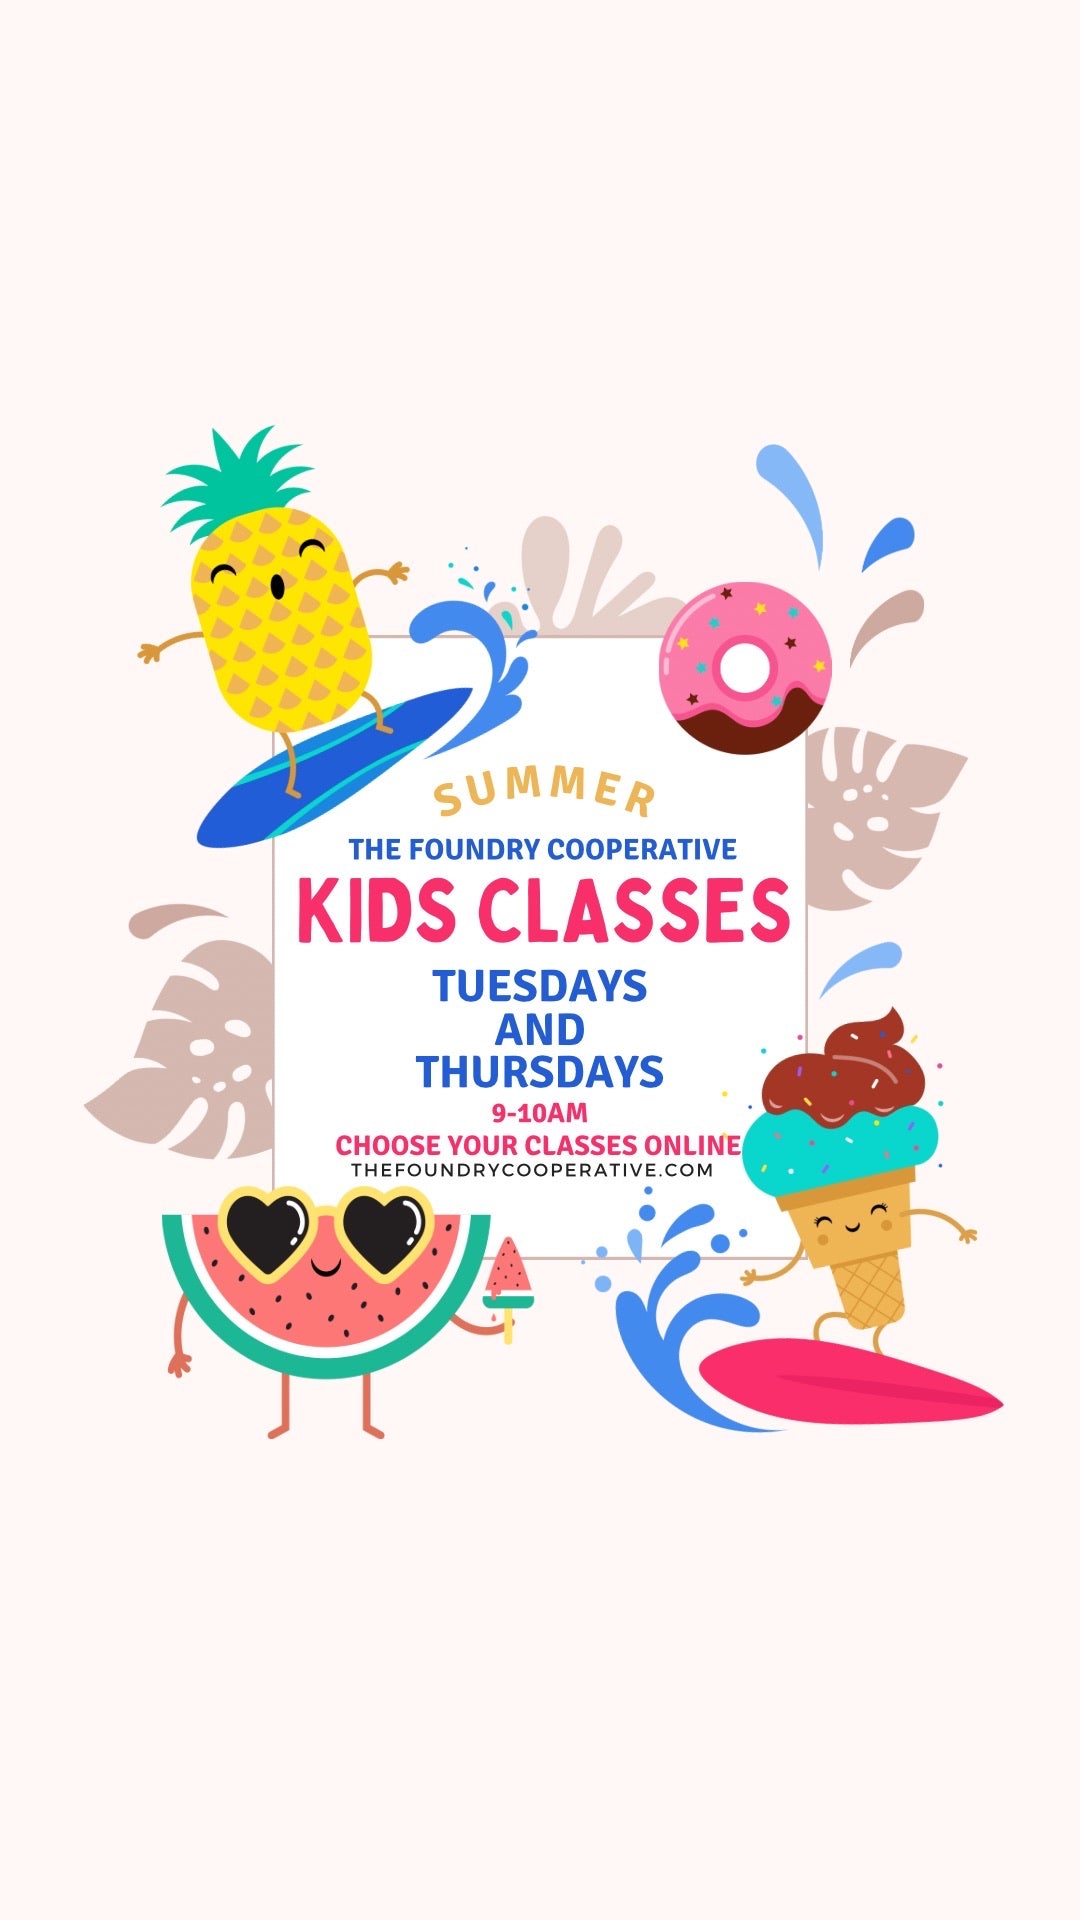 Summer Kids Class Series - Tuesday & Thursday Mornings 9AM-10AM